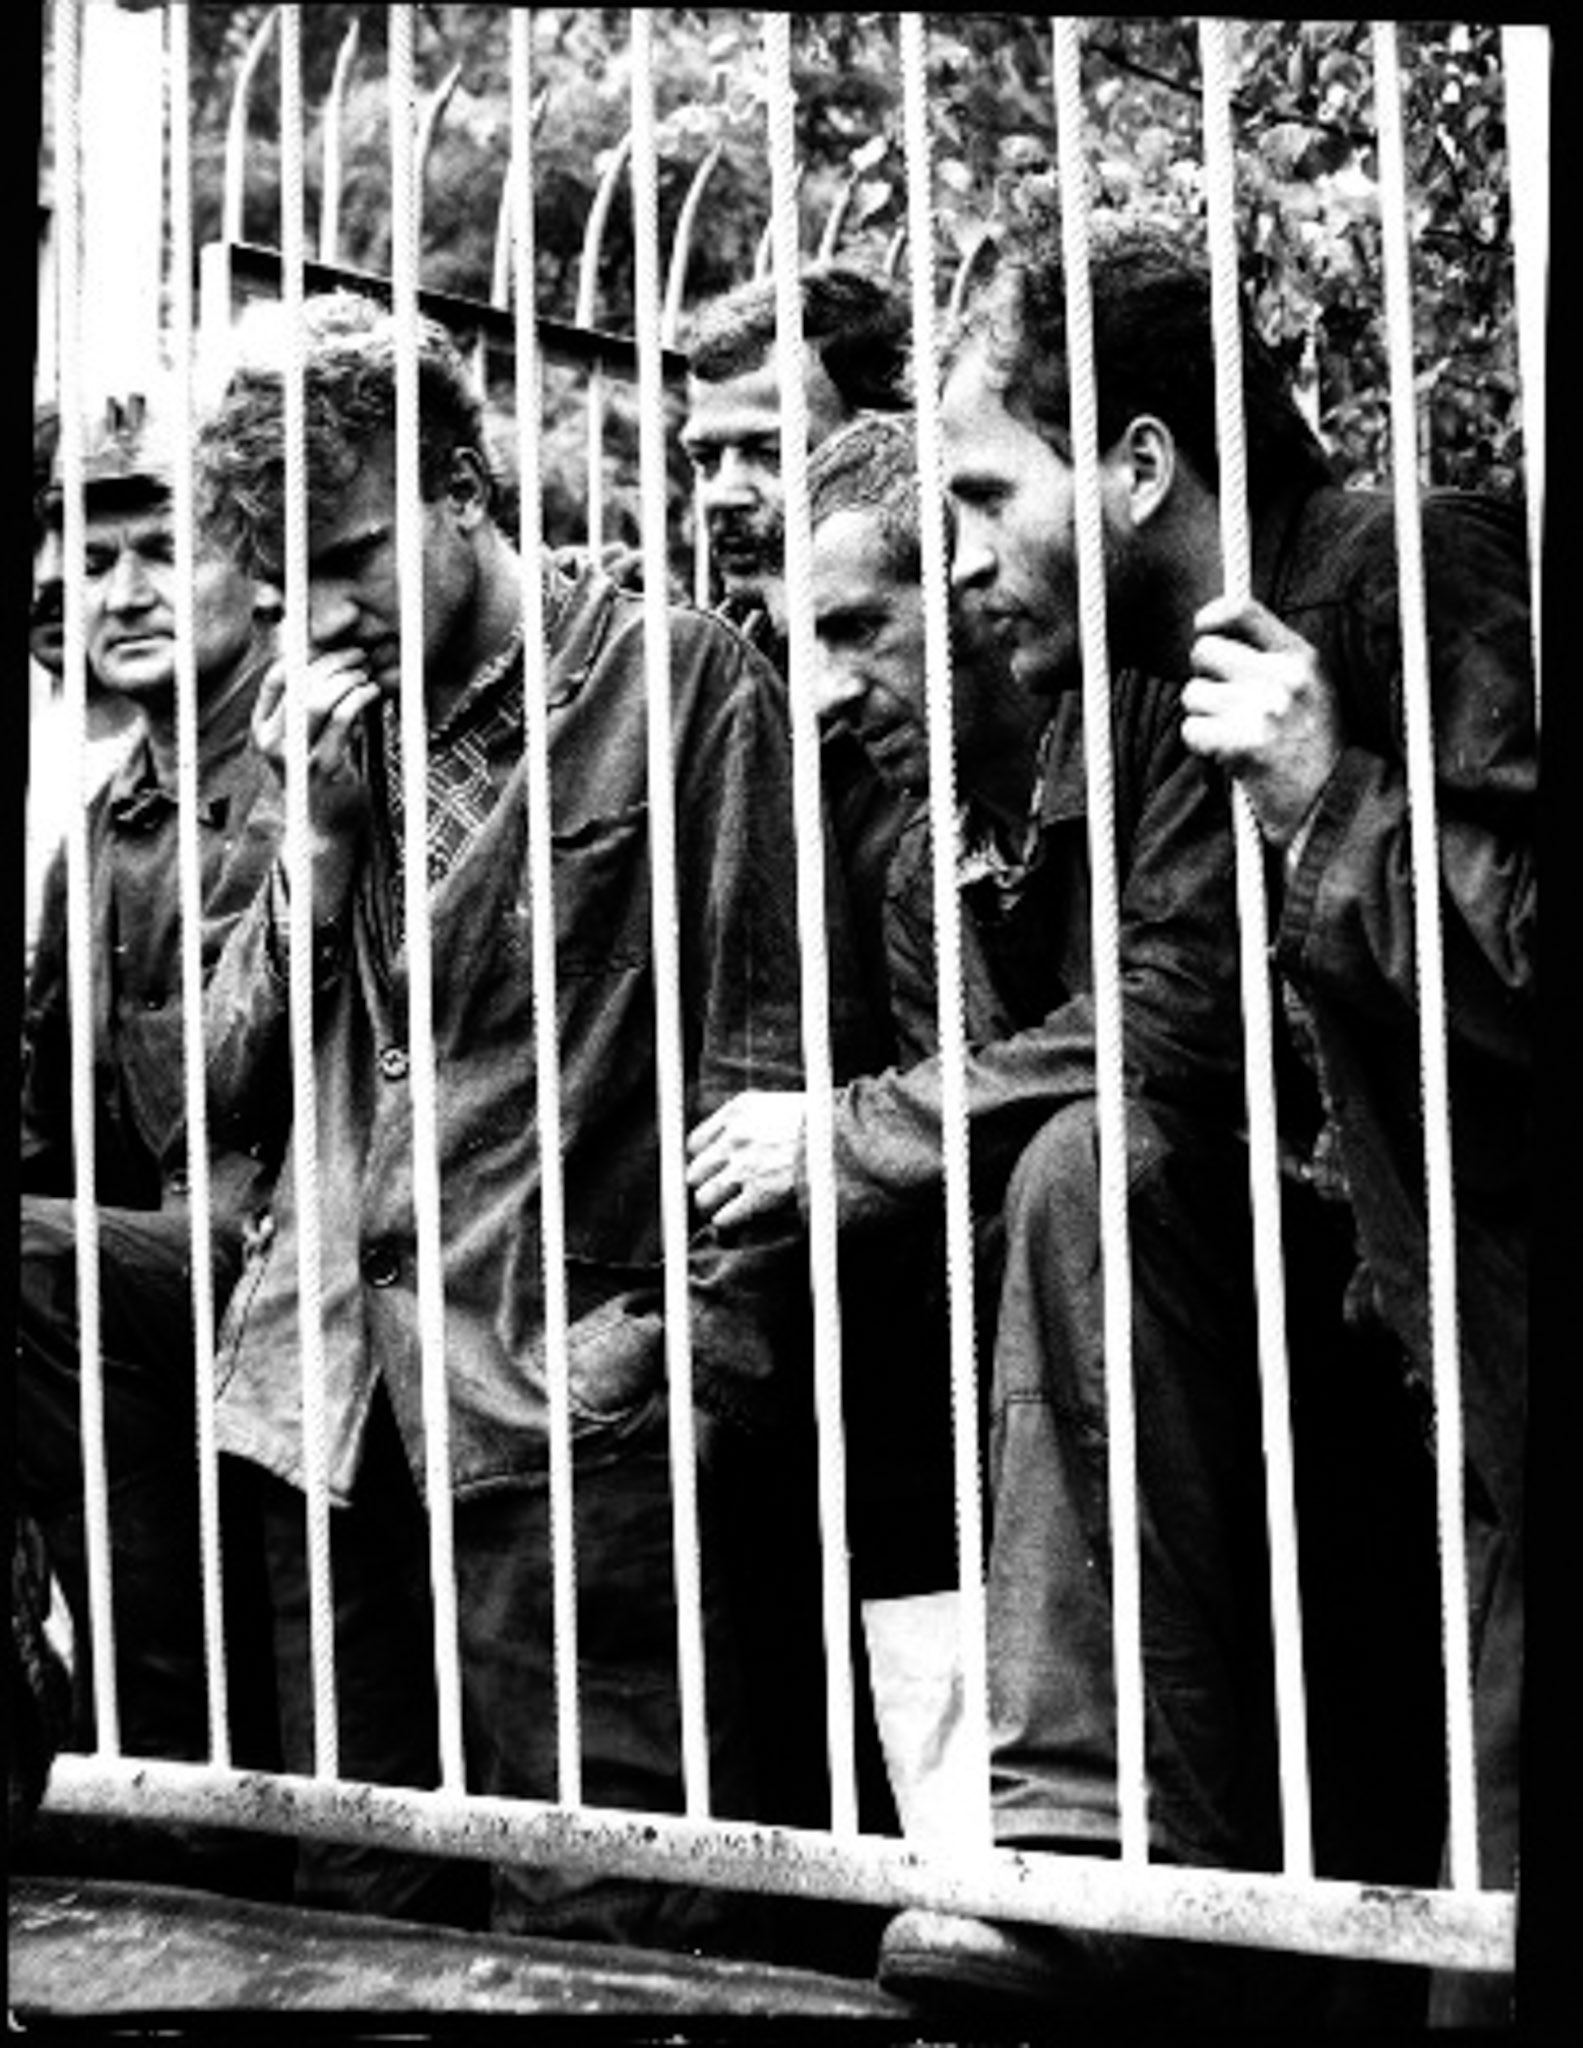 Jastrzębie, KWK Manifest Lipcowy, 27 sierpnia 1980, strajk górników